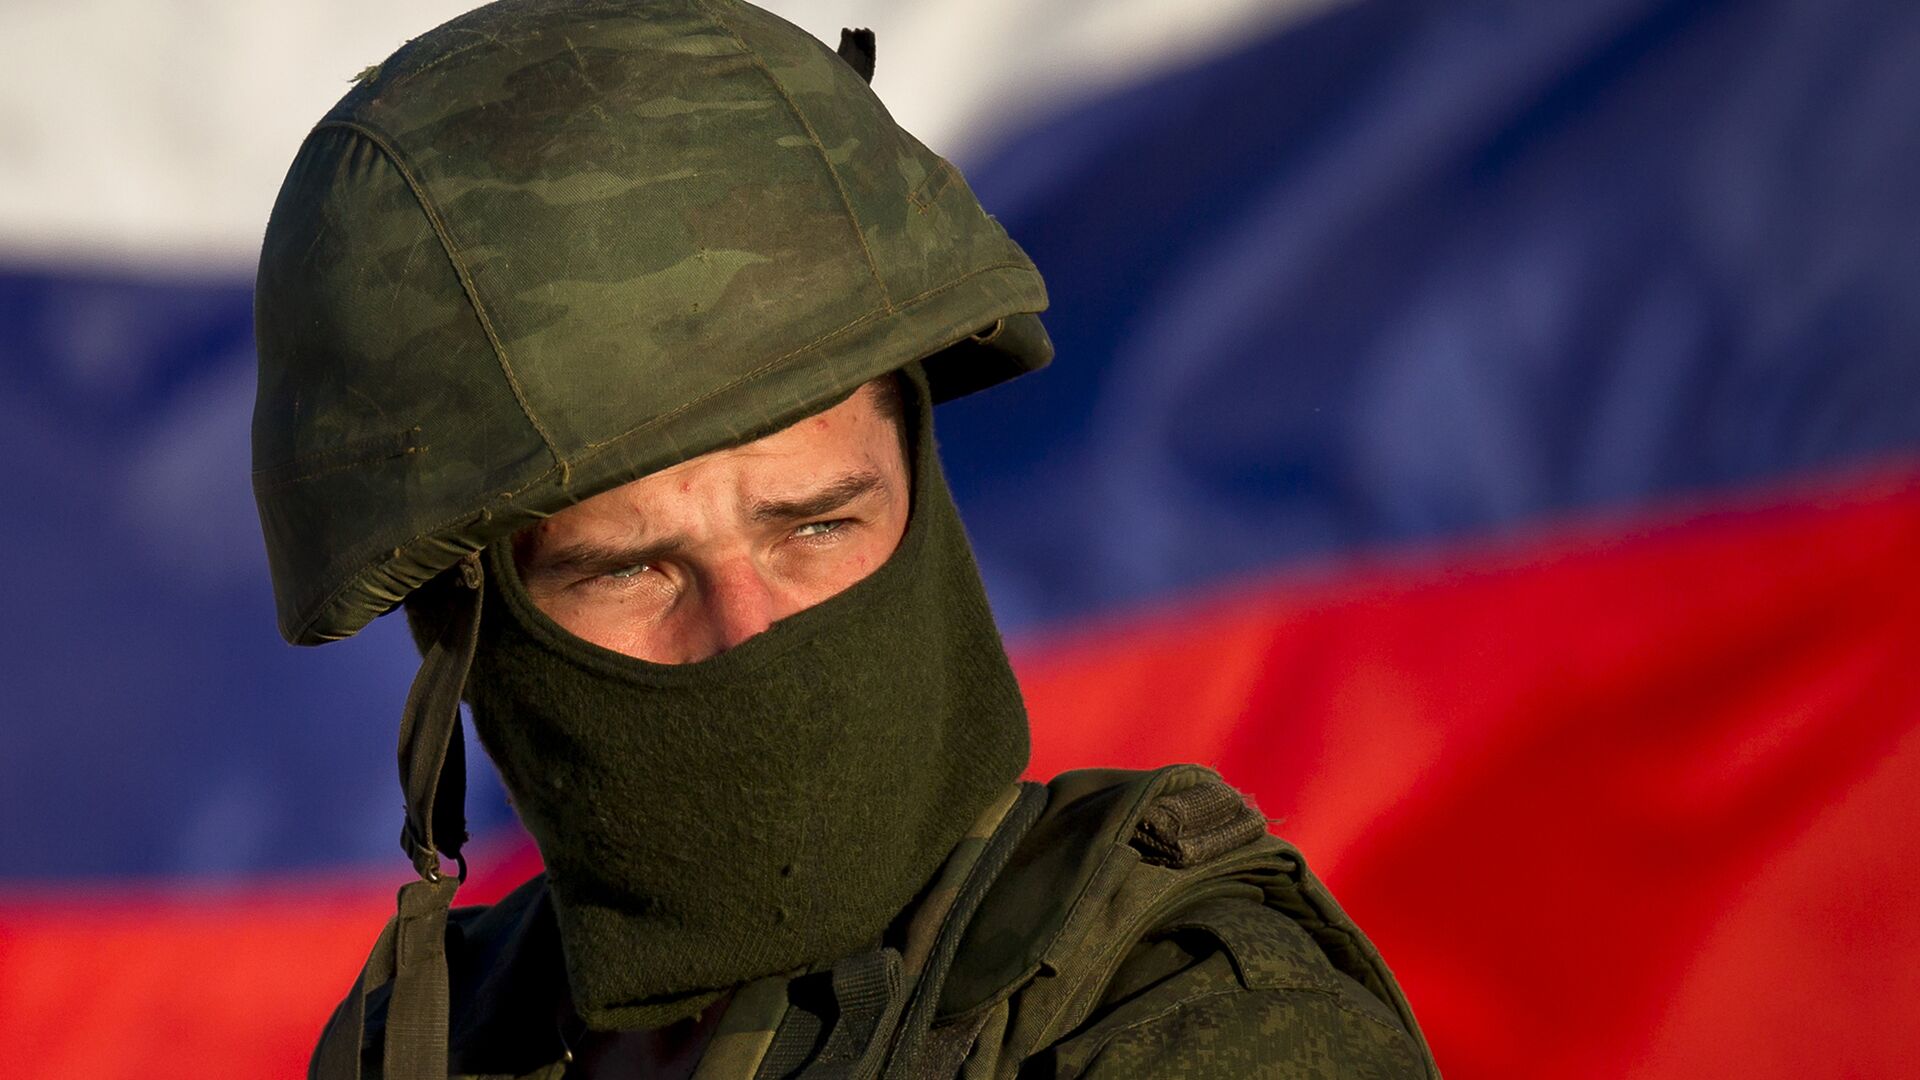 Российский солдат на украинской военной базе в Перевальном, Крым, 15 марта 2014 года - ИноСМИ, 1920, 14.09.2023